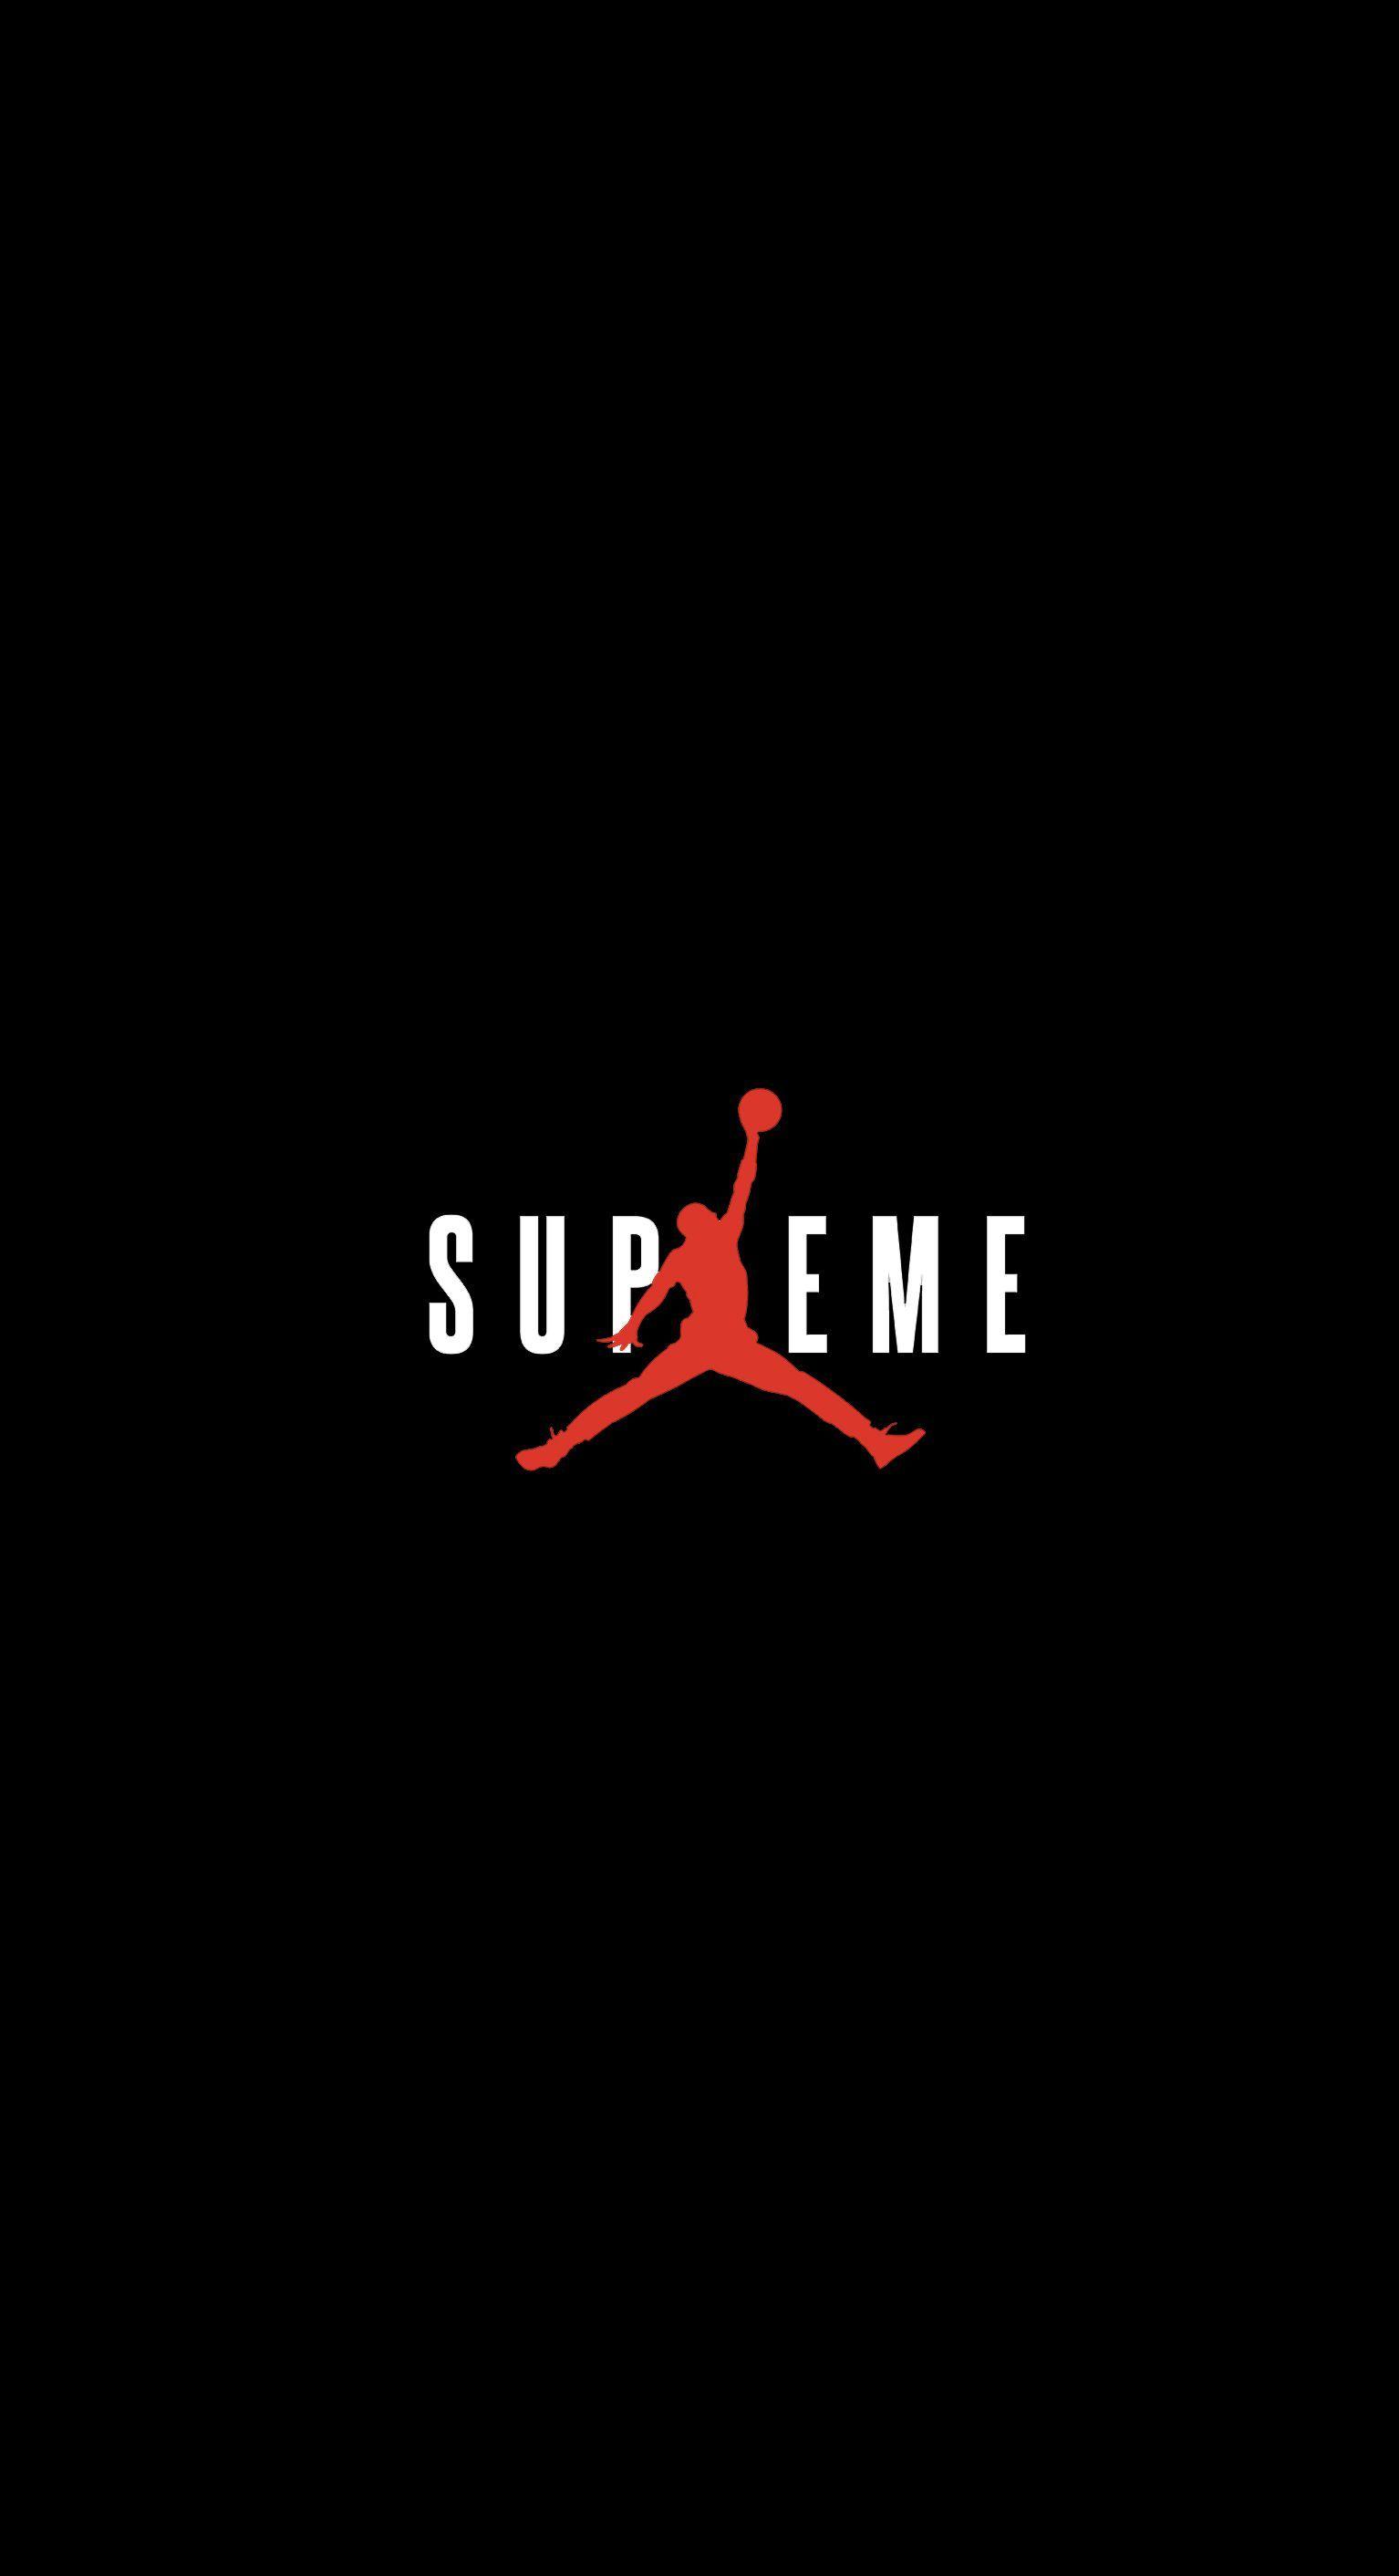 Supreme Cool Rap Logo - Supreme x Jordan Wallpaper : streetwear - Streetwear Wallpapers ...